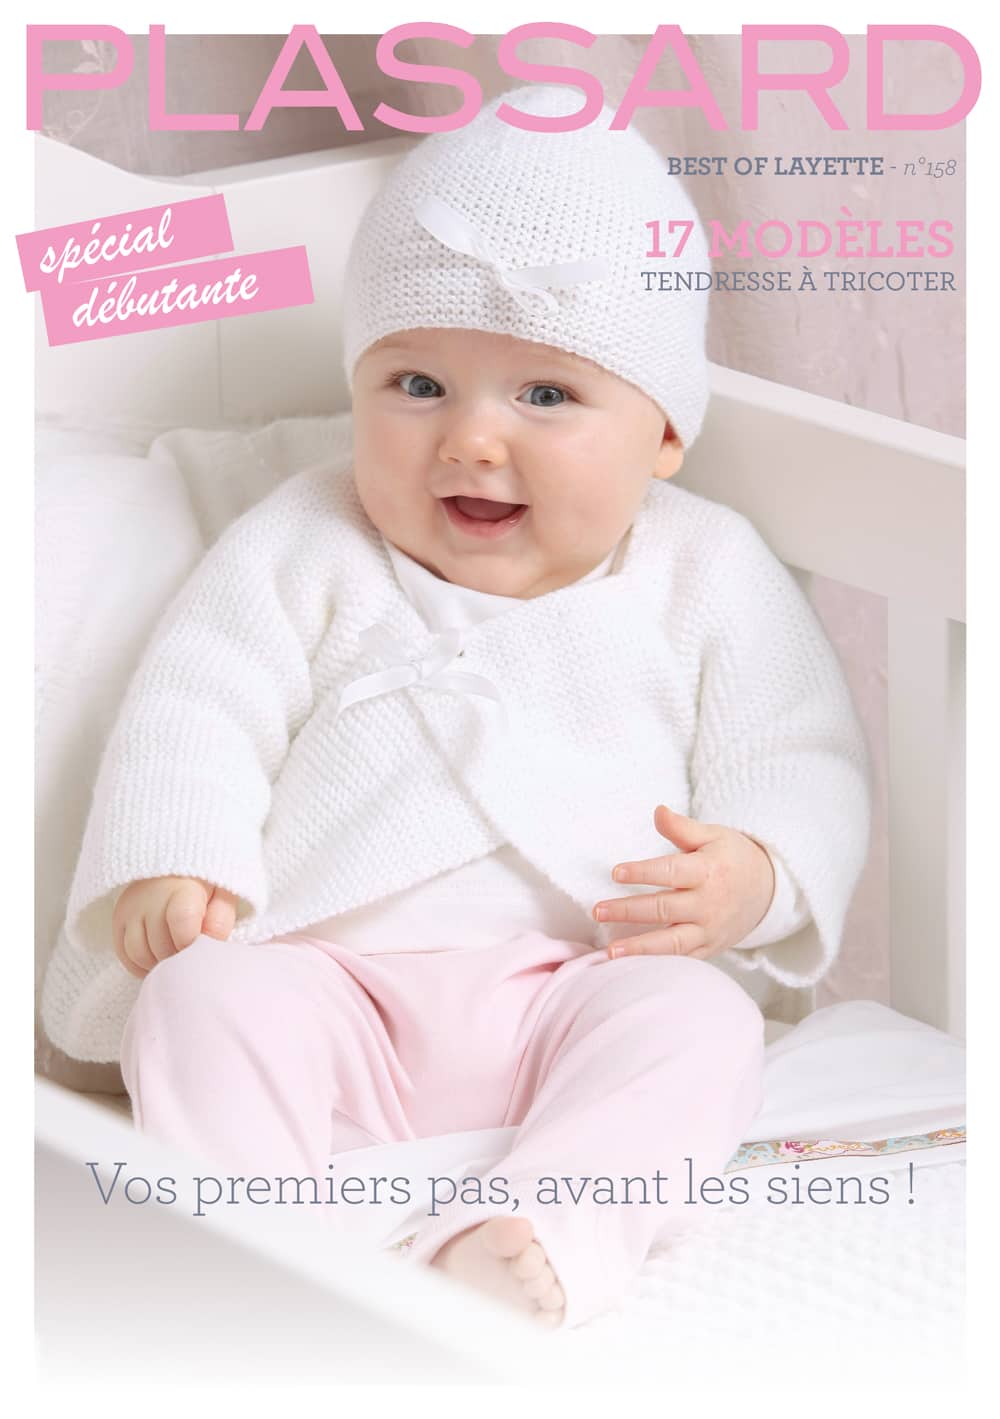 Modèles du catalogue Plassard n°158 : Best of Layette Spécial débutante